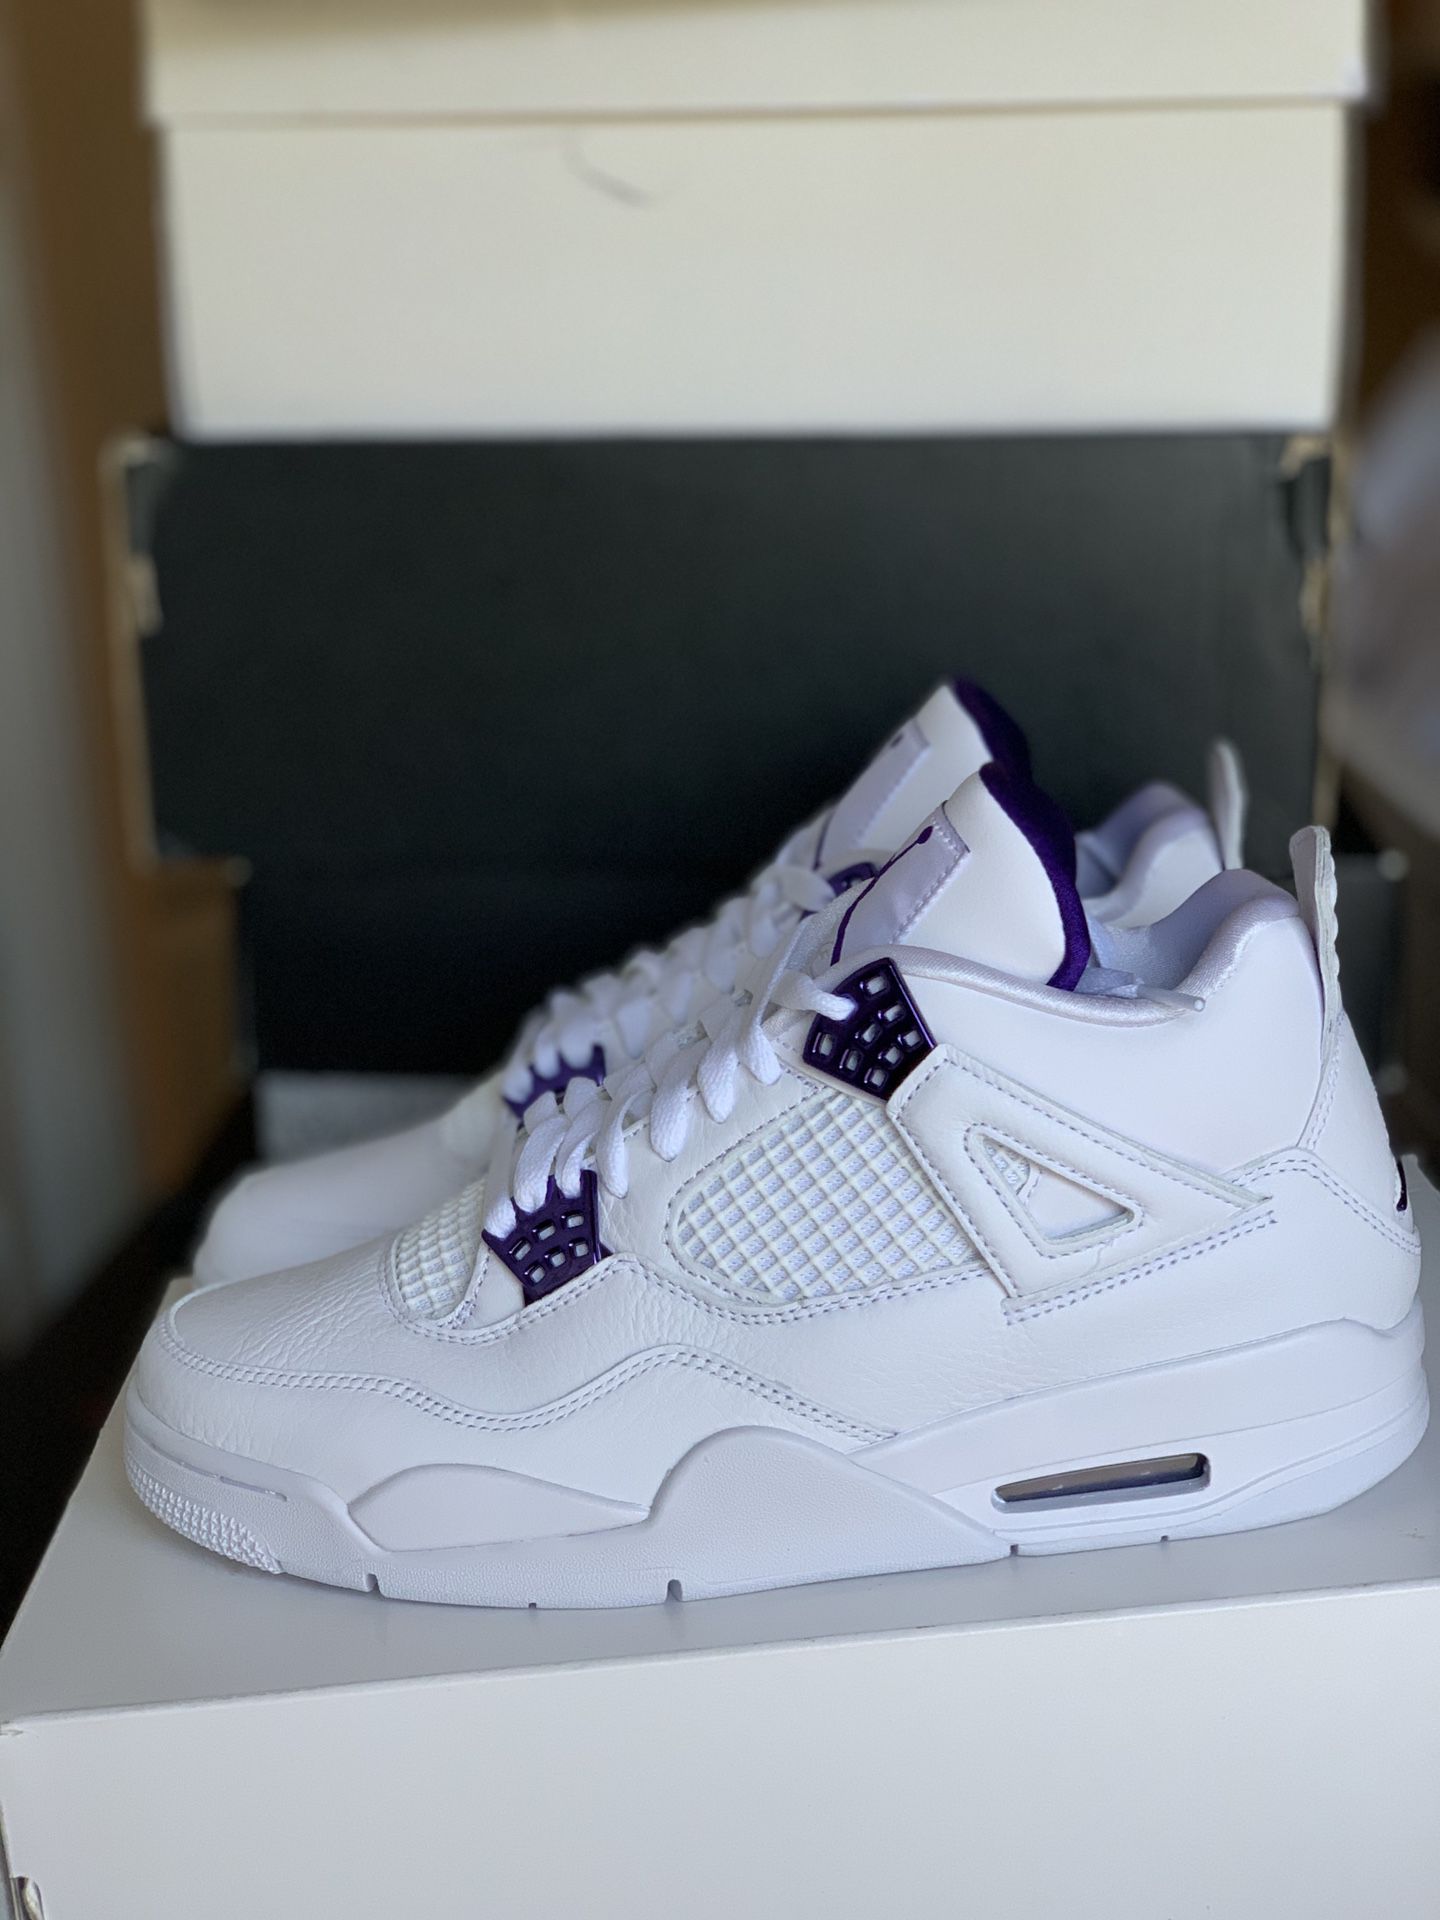 Air Jordan metallic purple